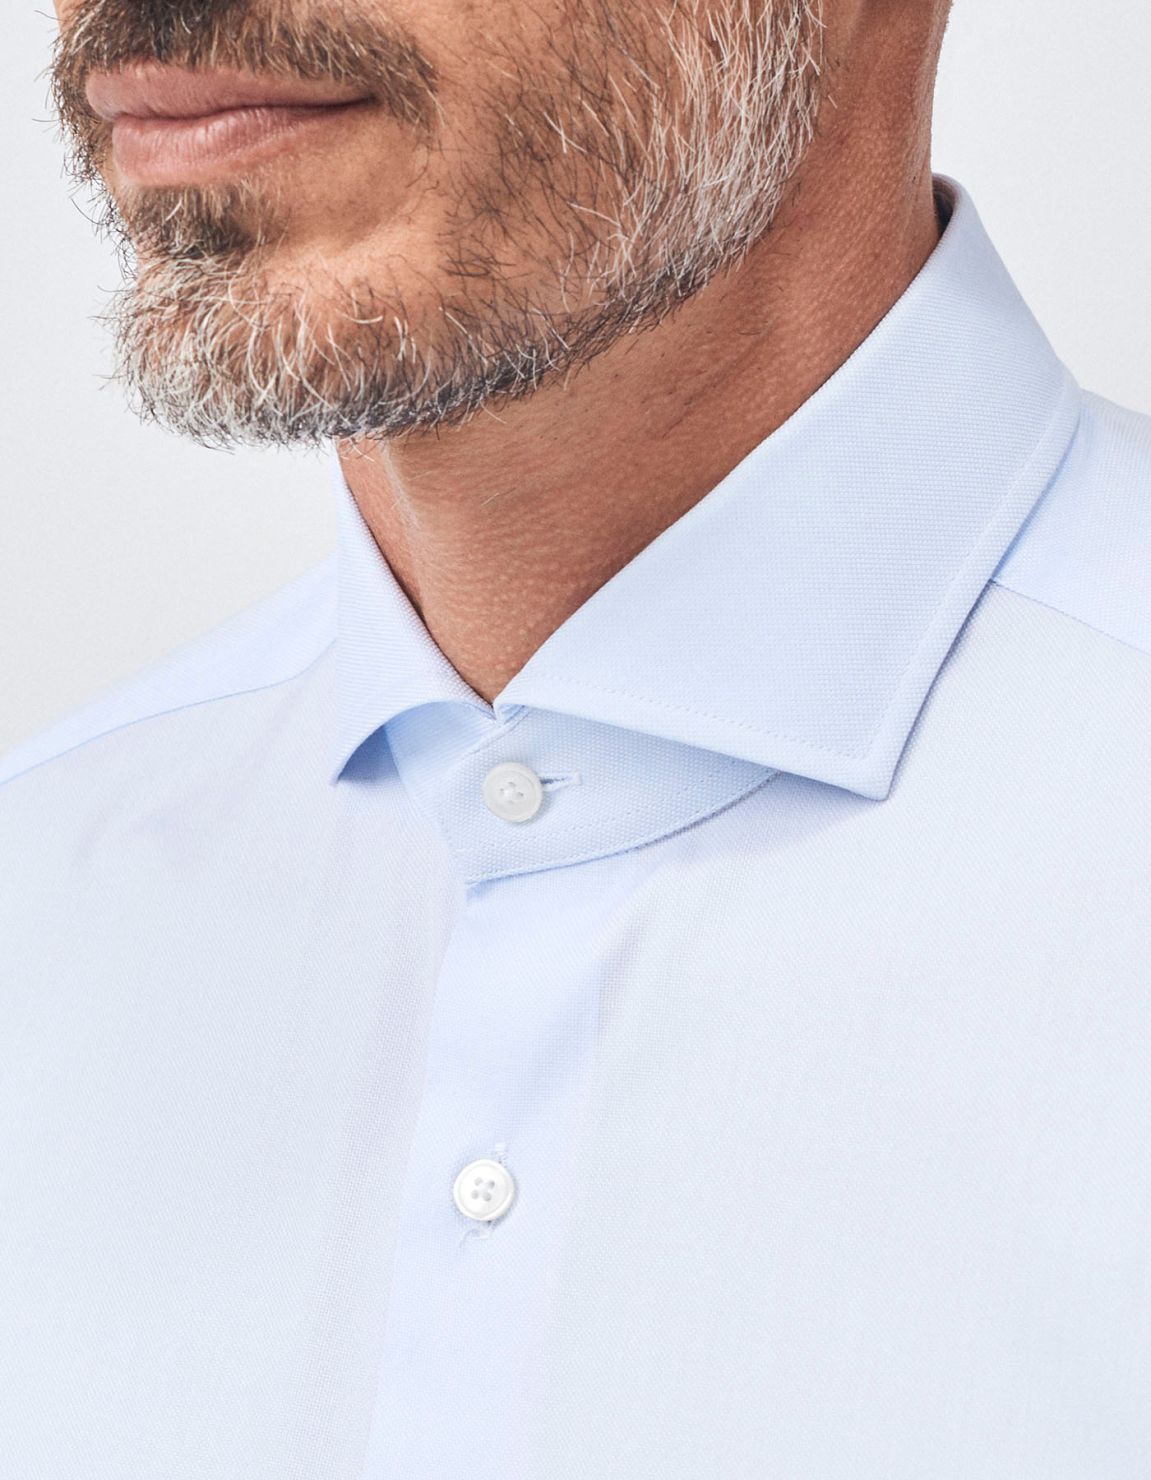 Camisa Cuello francés Celeste claro Oxford Liso Slim Fit 3